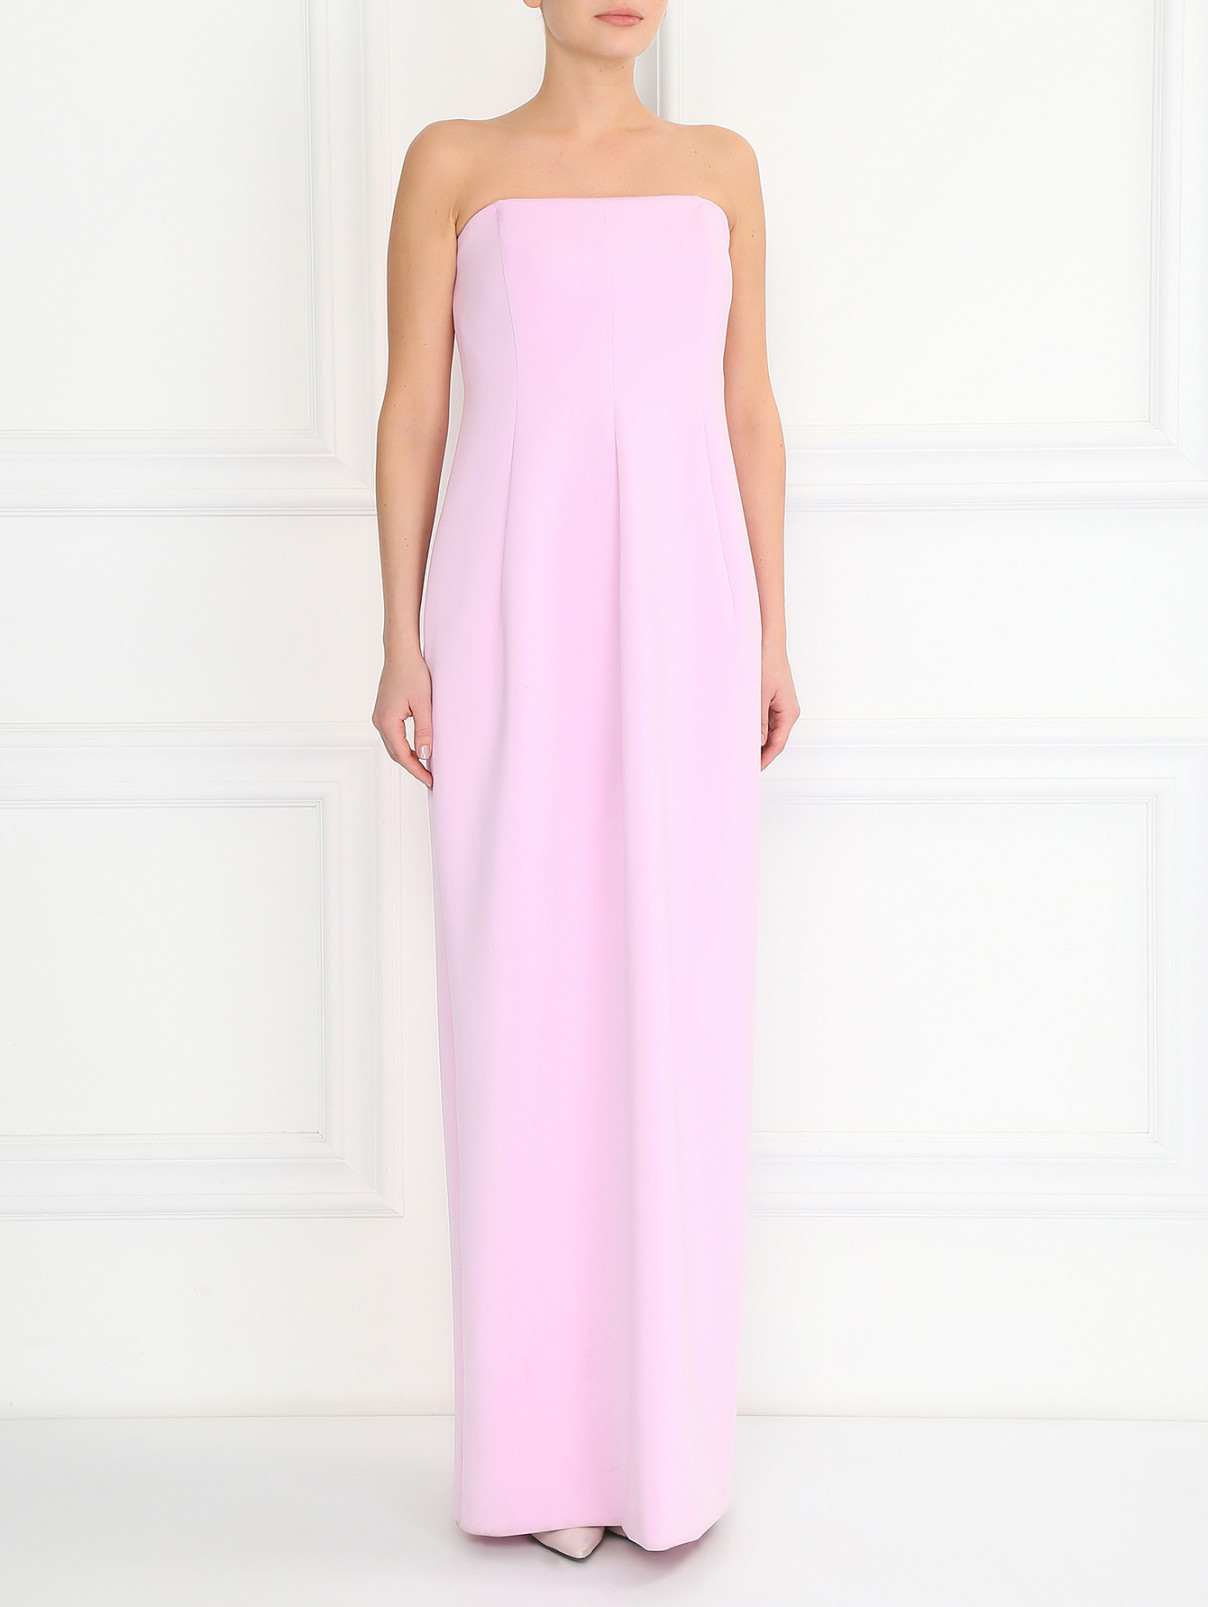 Платье-макси без рукавов Jil Sander  –  Модель Общий вид  – Цвет:  Розовый